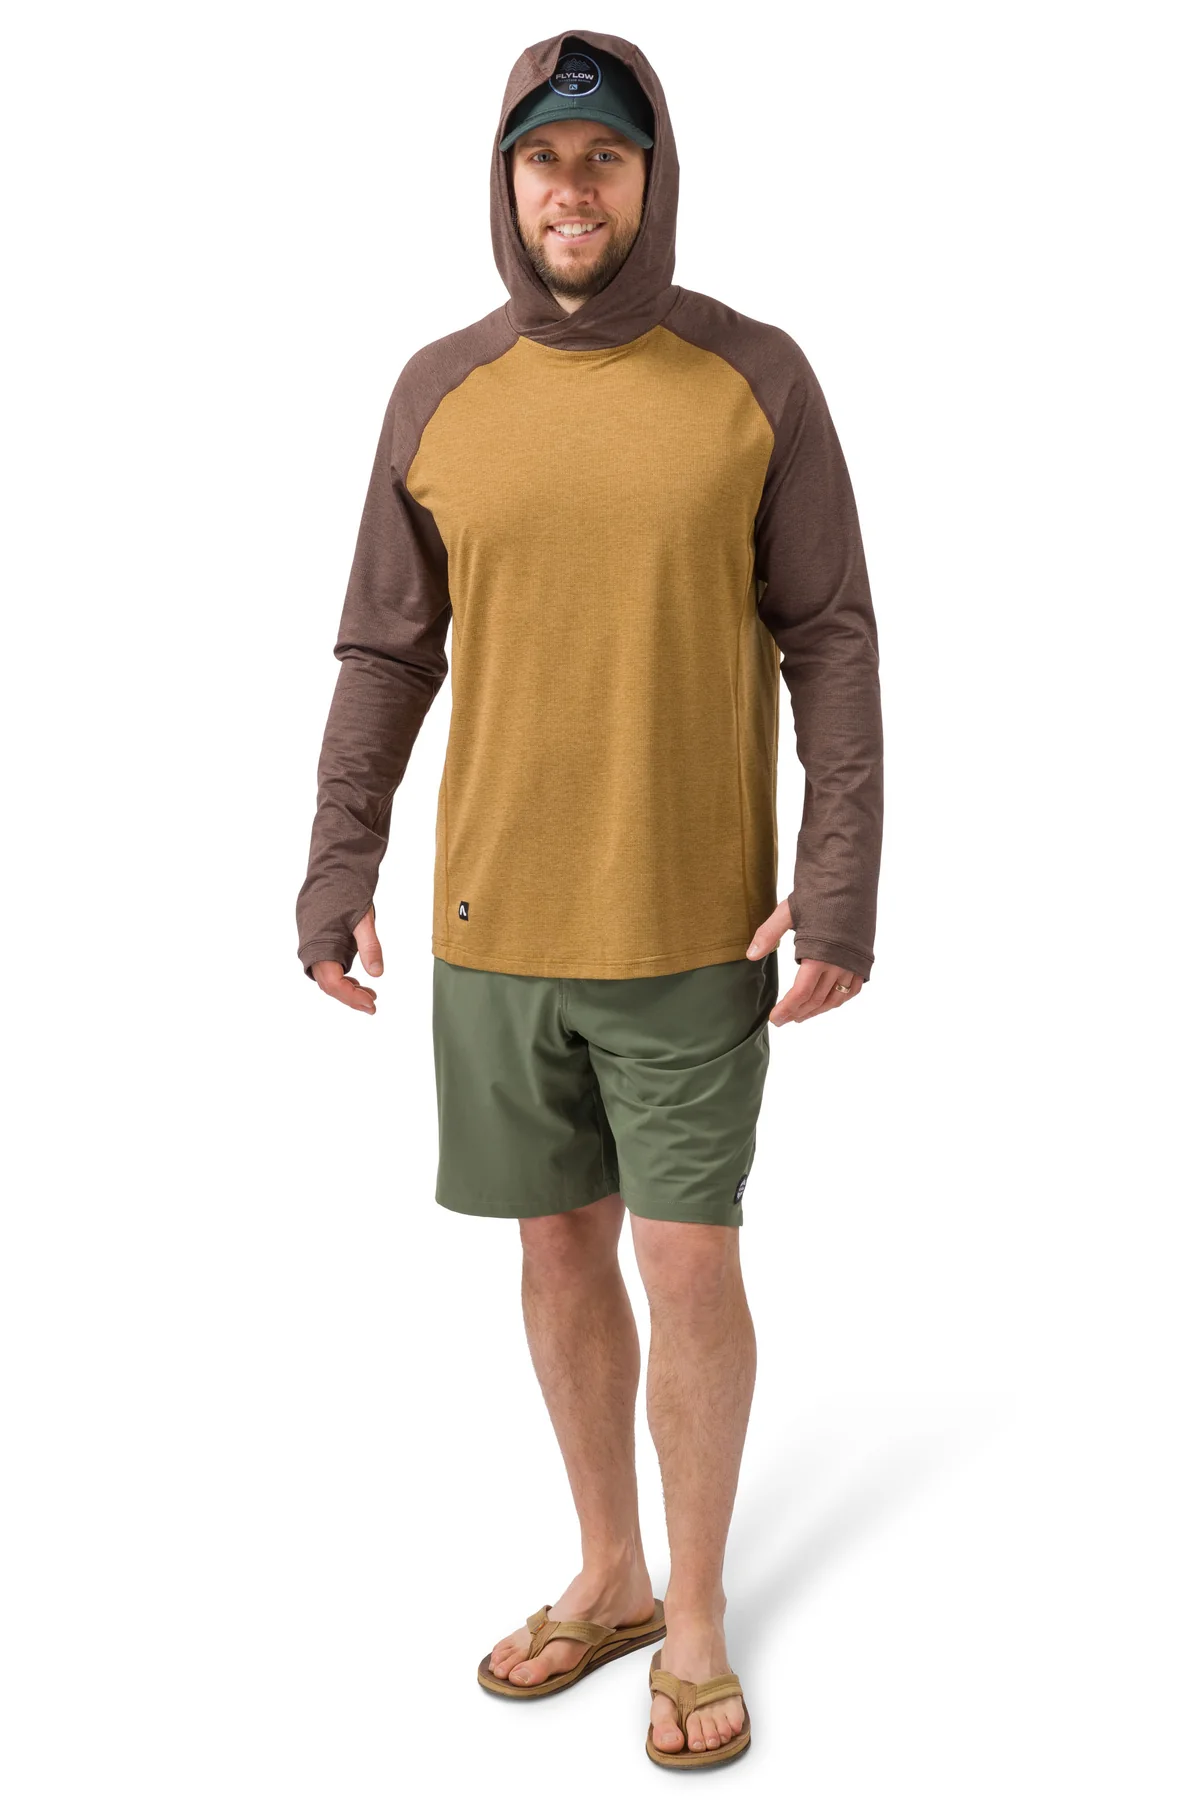 Flylow Gear Bandit Shirt